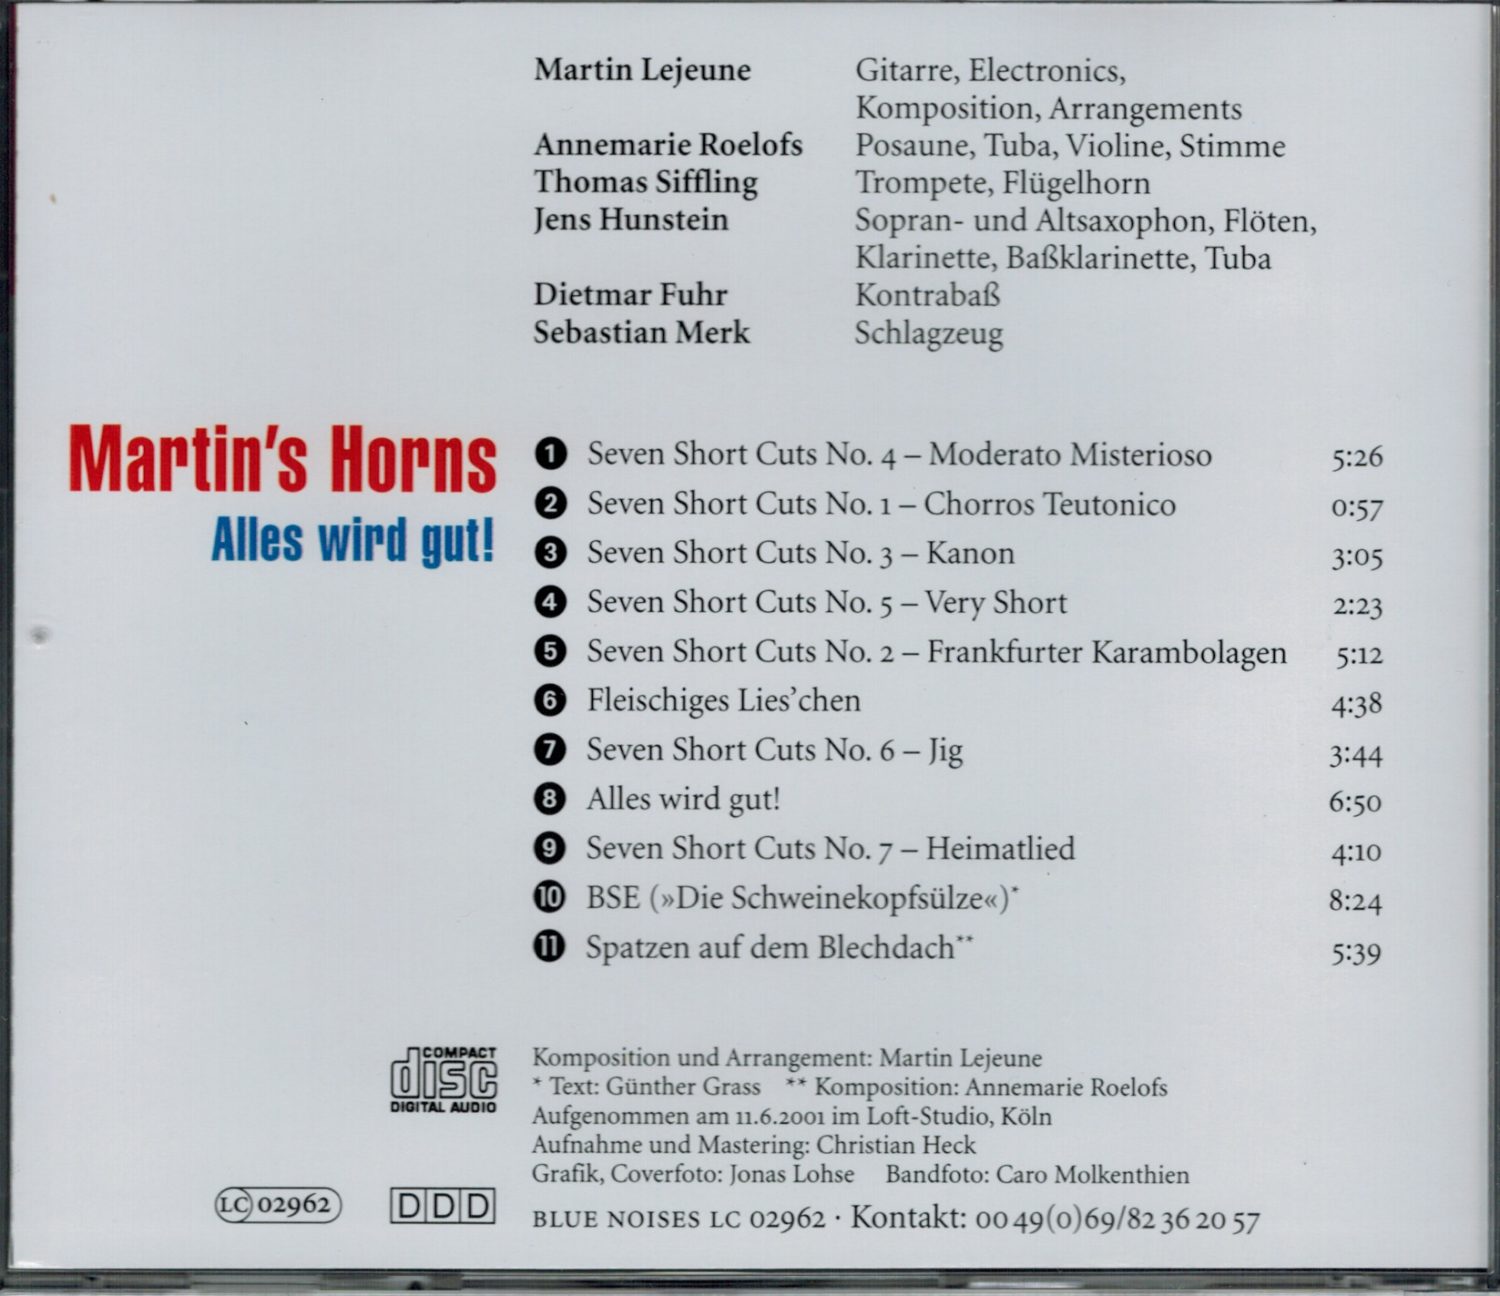 Martin's Horns "Alles wird gut!"